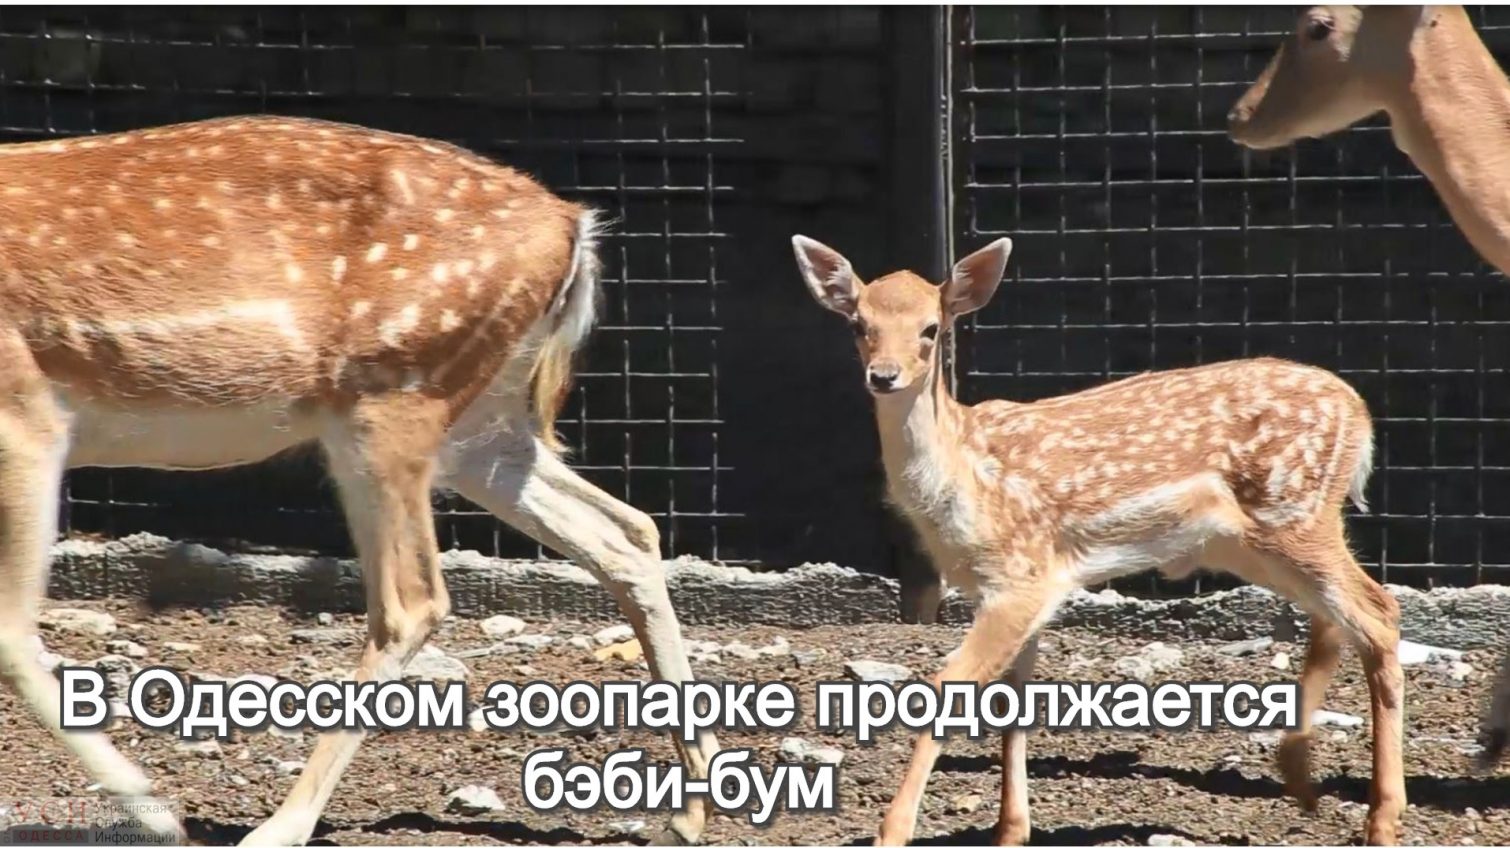 В Одесском зоопарке продолжается бэби-бум (видео) «фото»